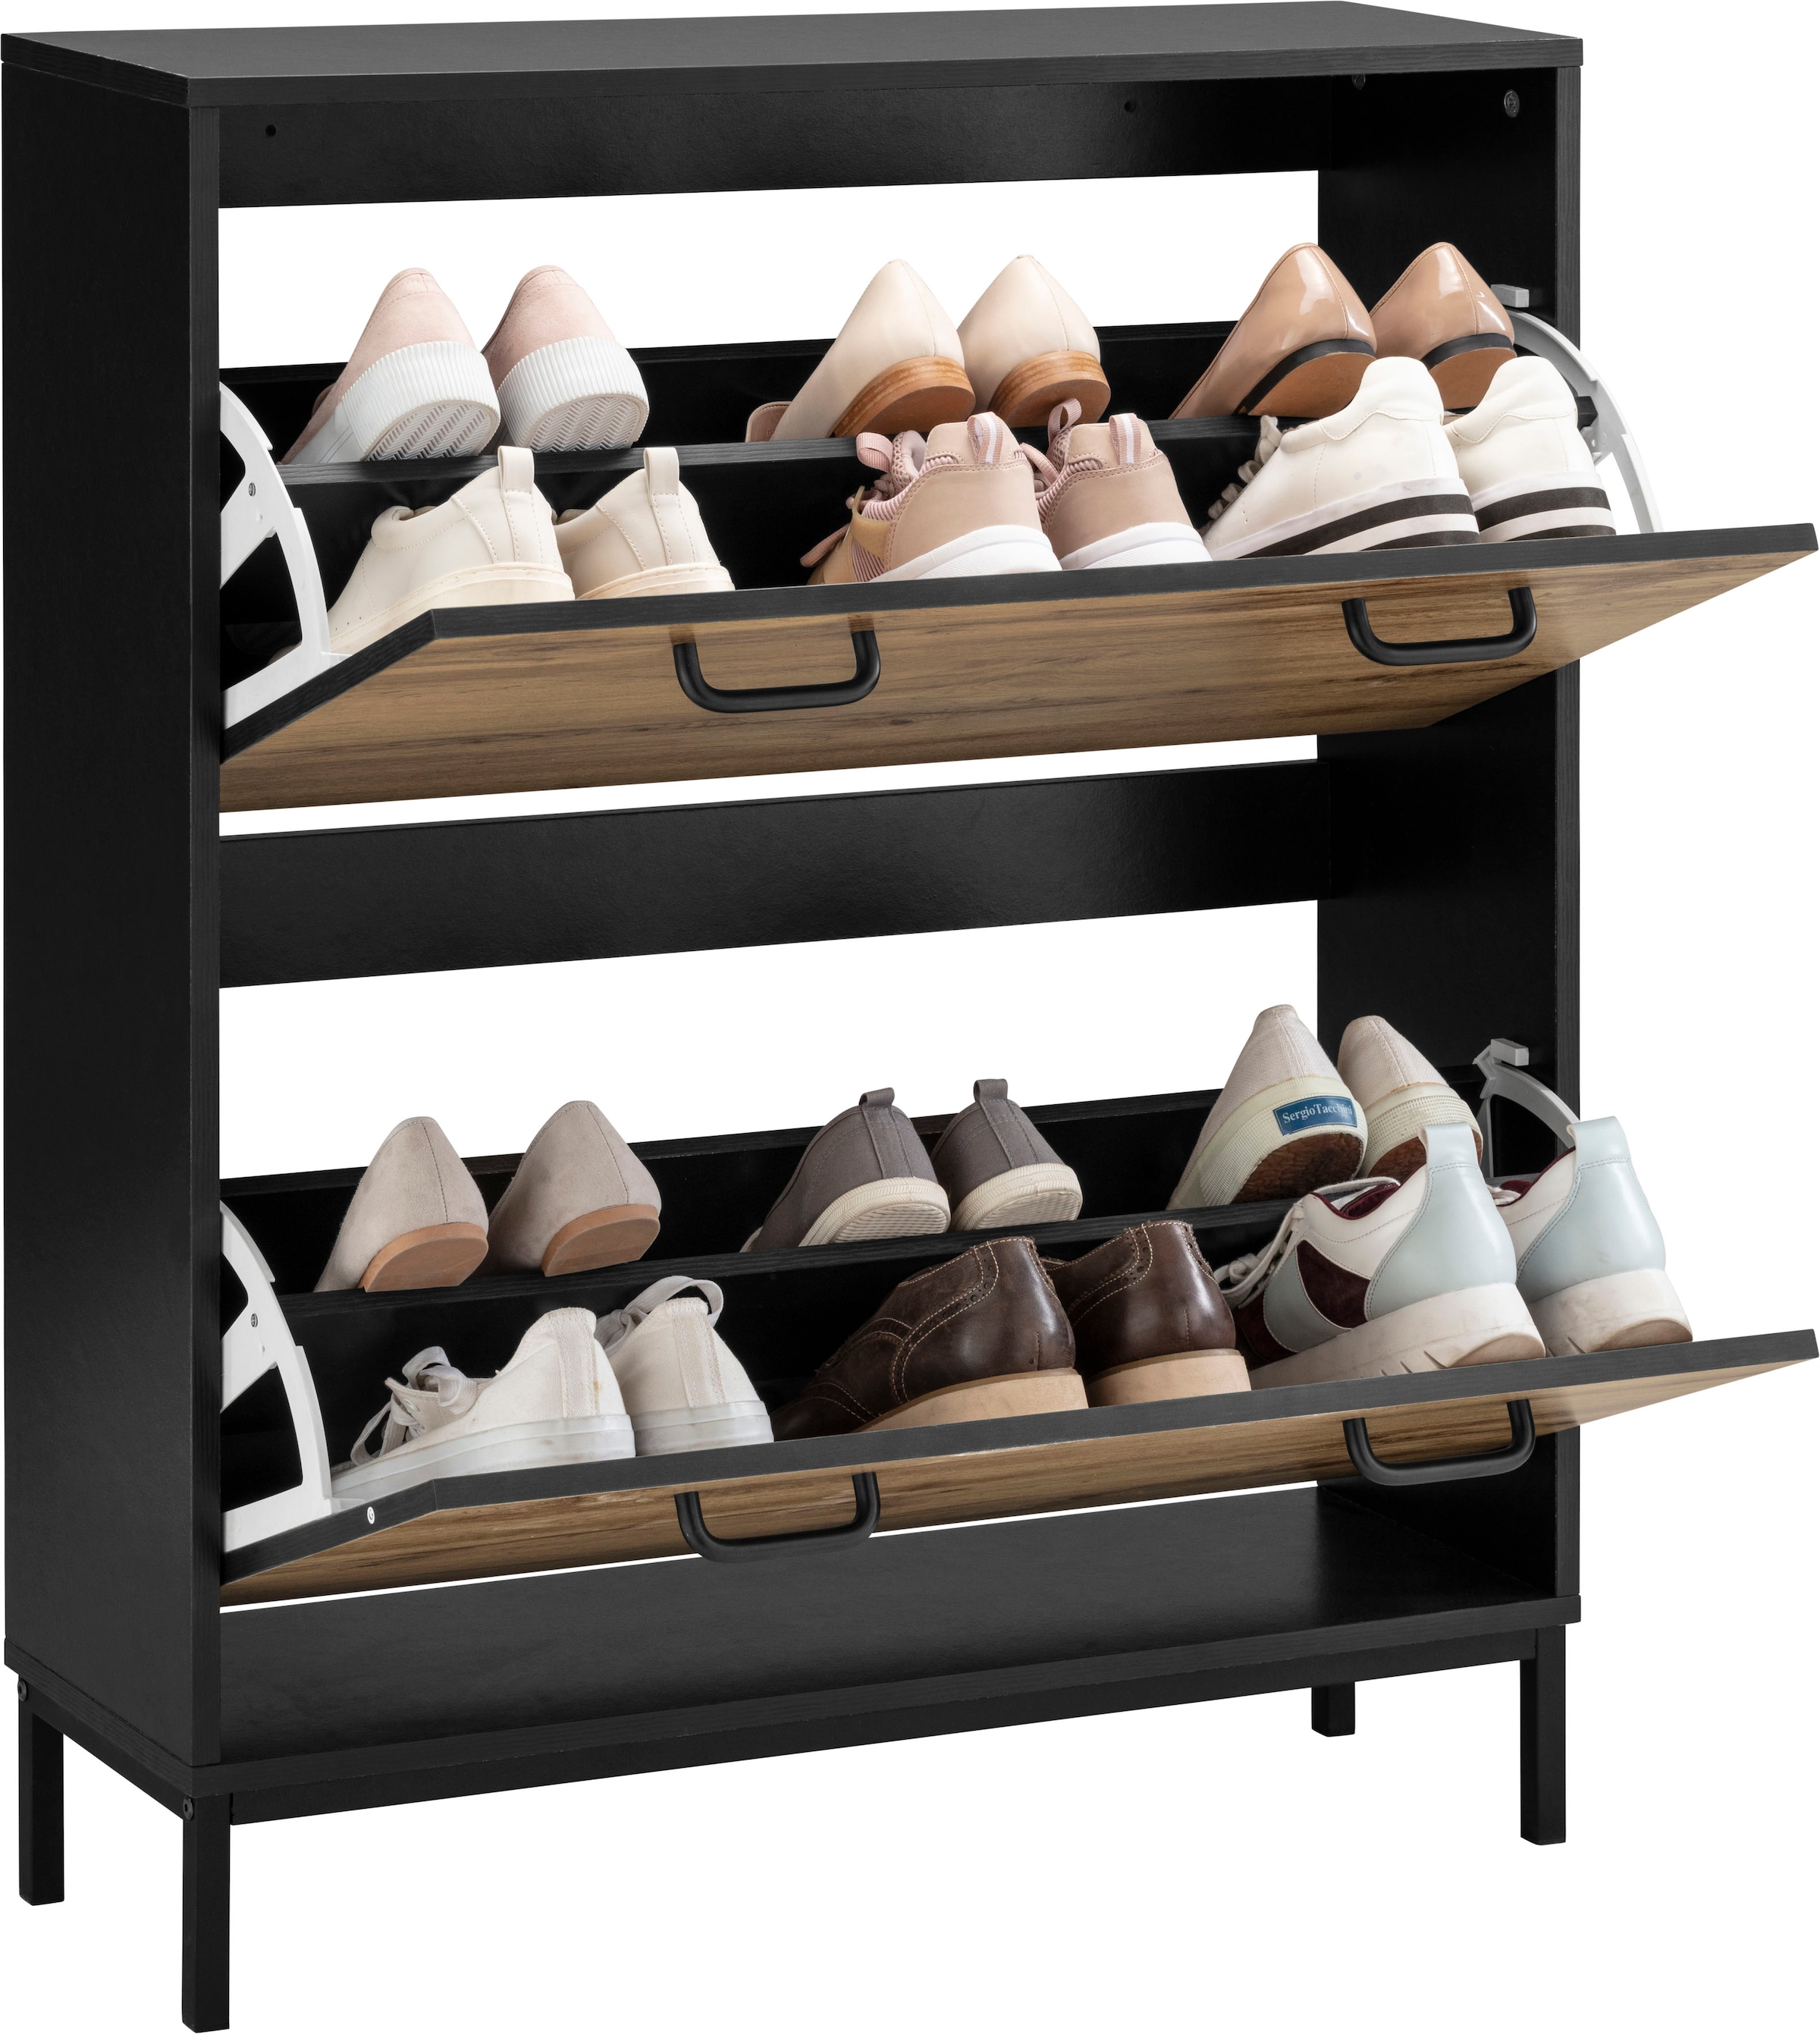 Places of Style Schuhschrank »Rocco«, mit 2 Klappen, Griffe aus Metall, Breite 80 cm, Höhe 100,5 cm